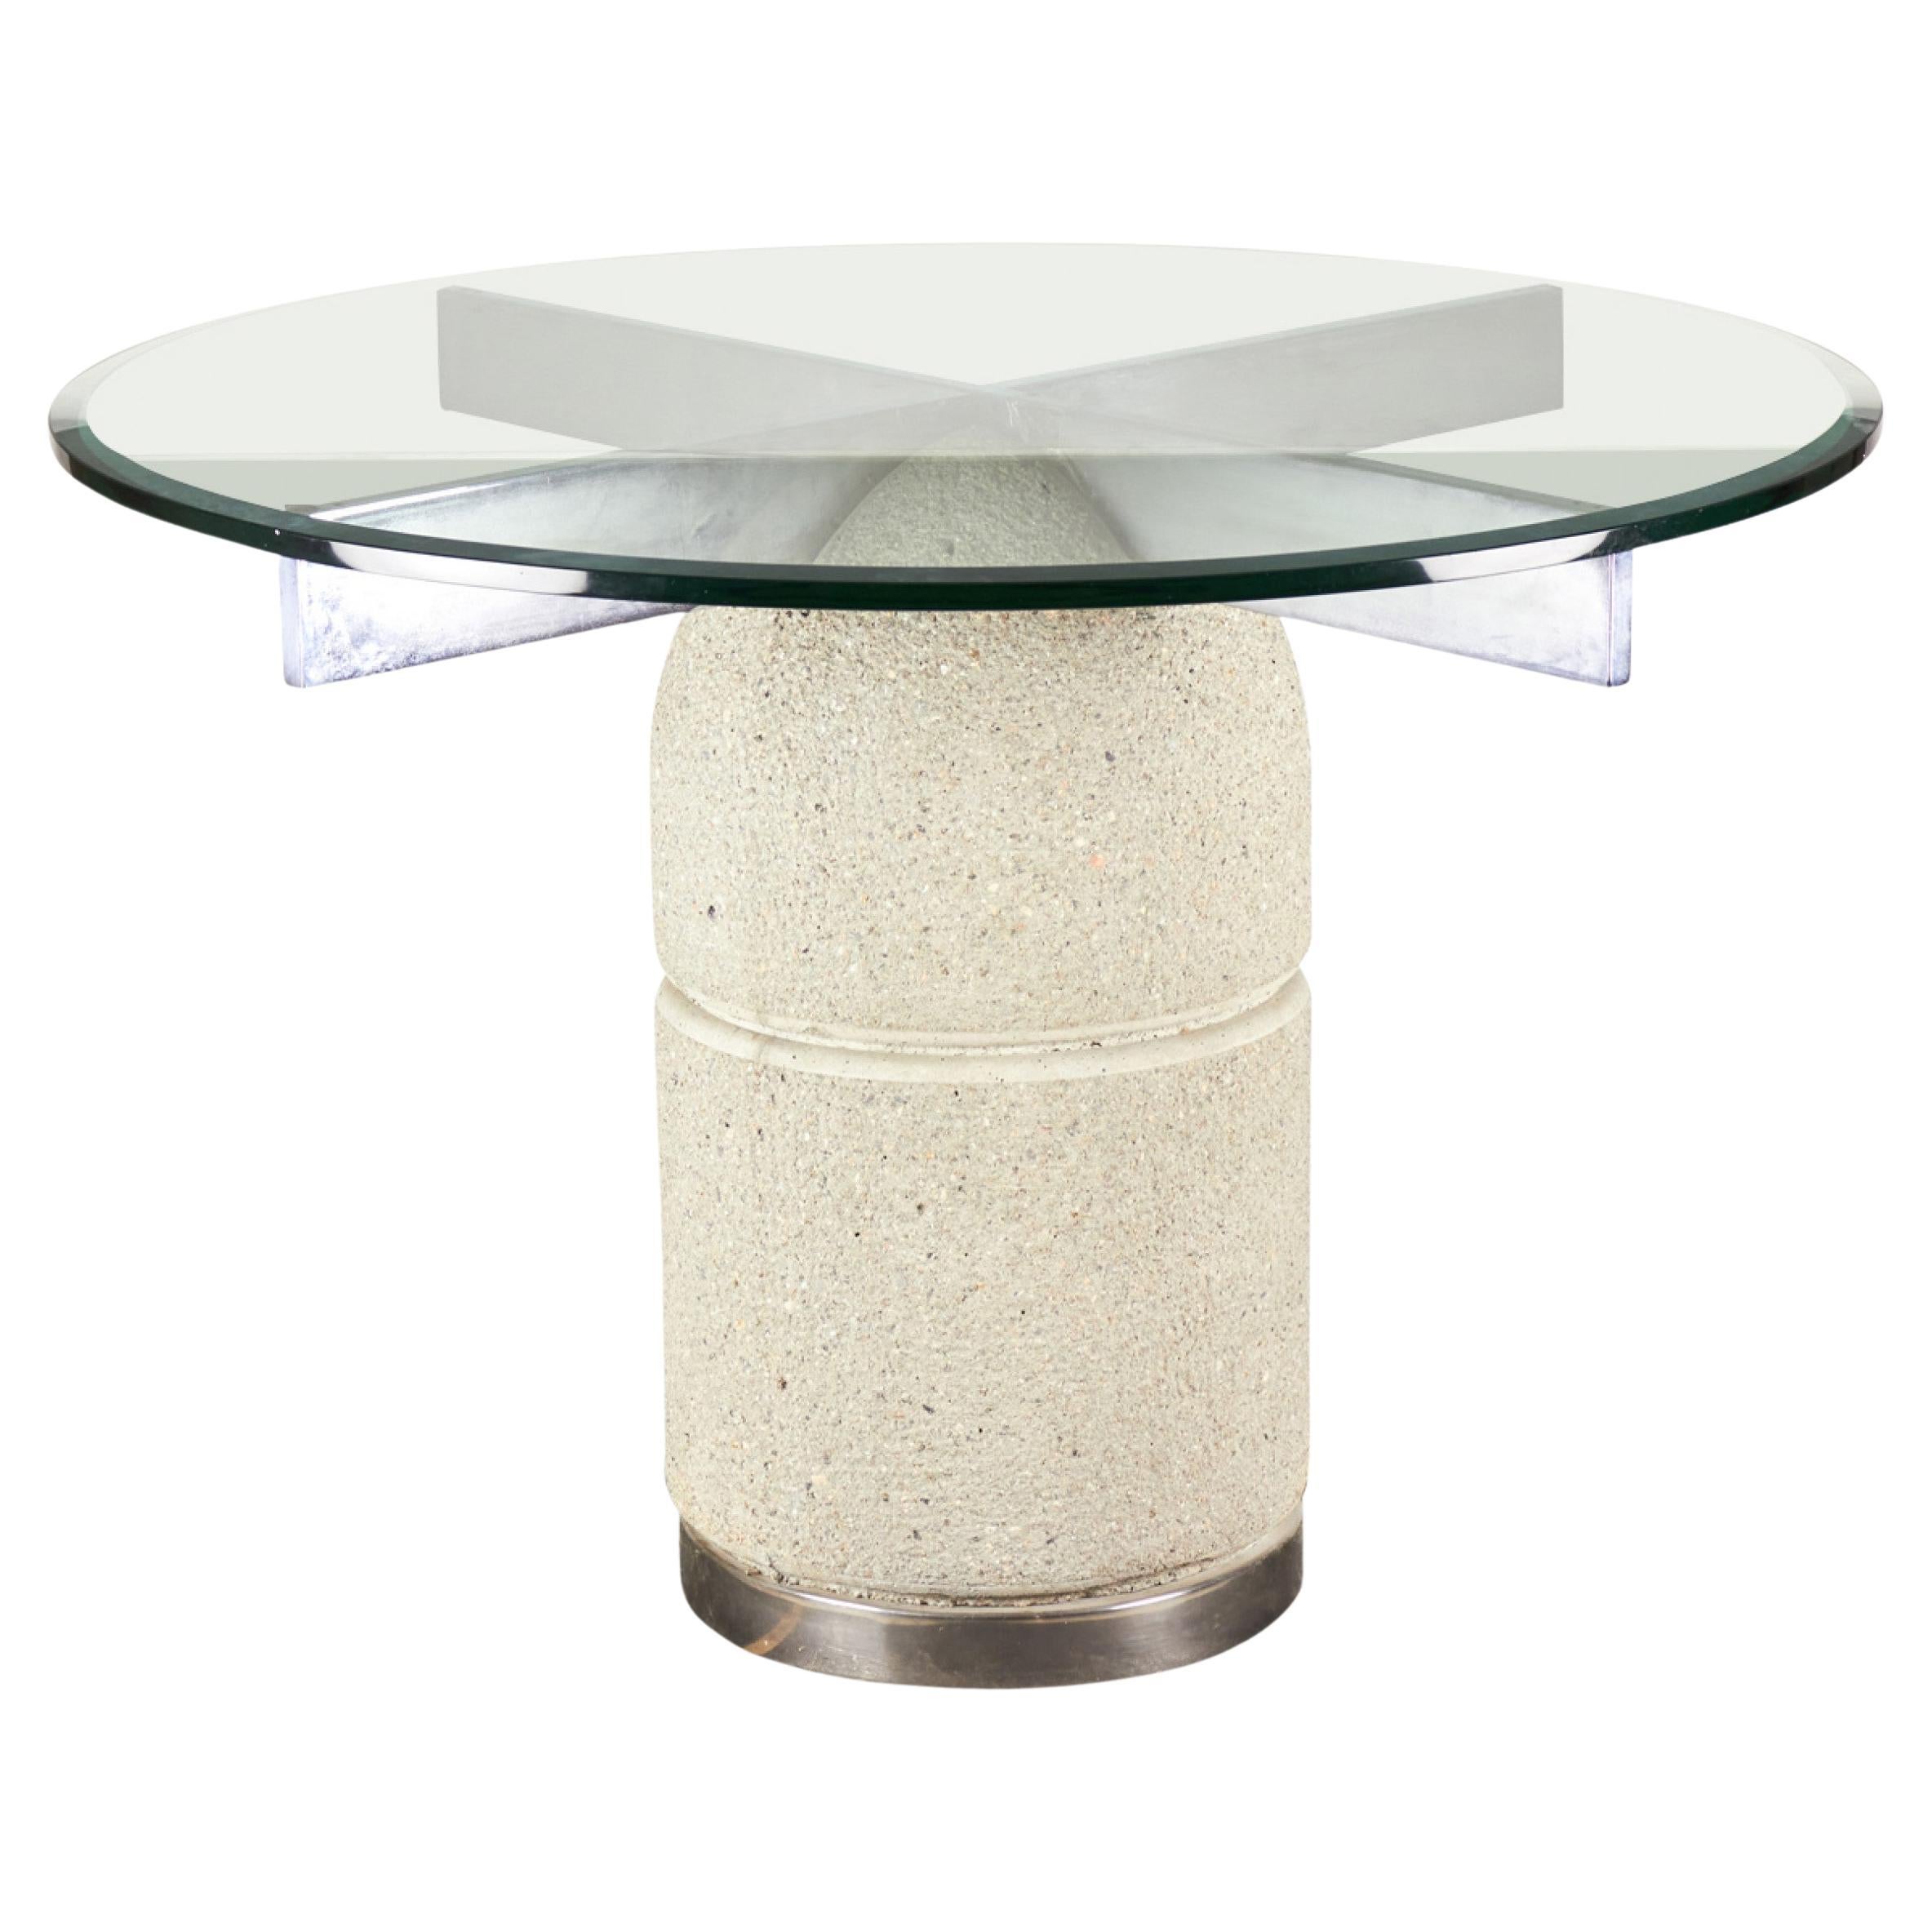 Giovanni Offredi for Saporiti Italian Texture Concrete and Glass Dining Table